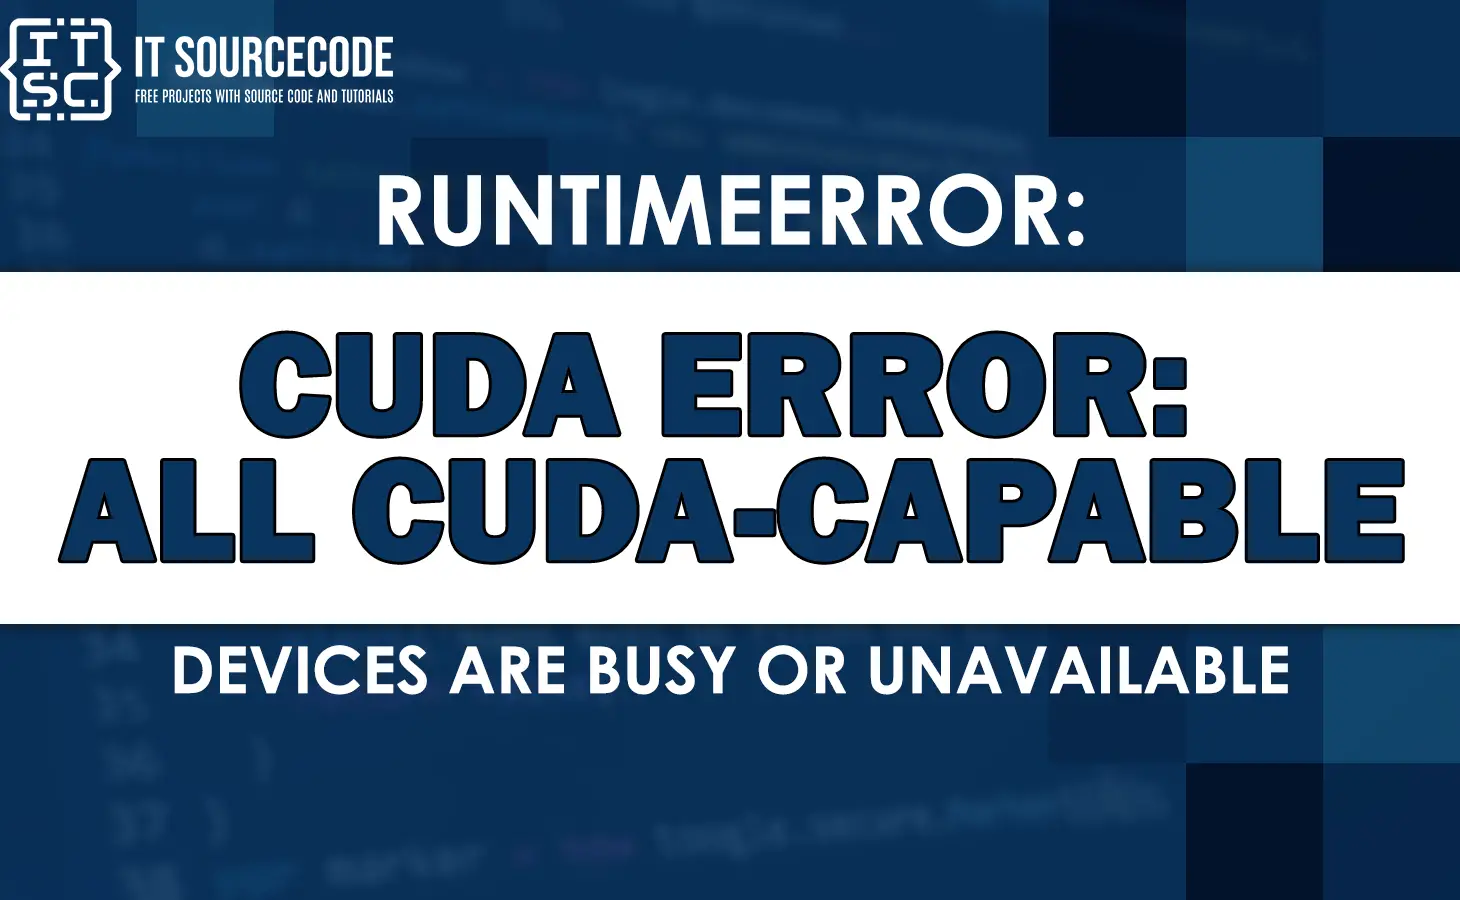 runtimeerror cuda error all cuda-capable devices are busy or unavailable